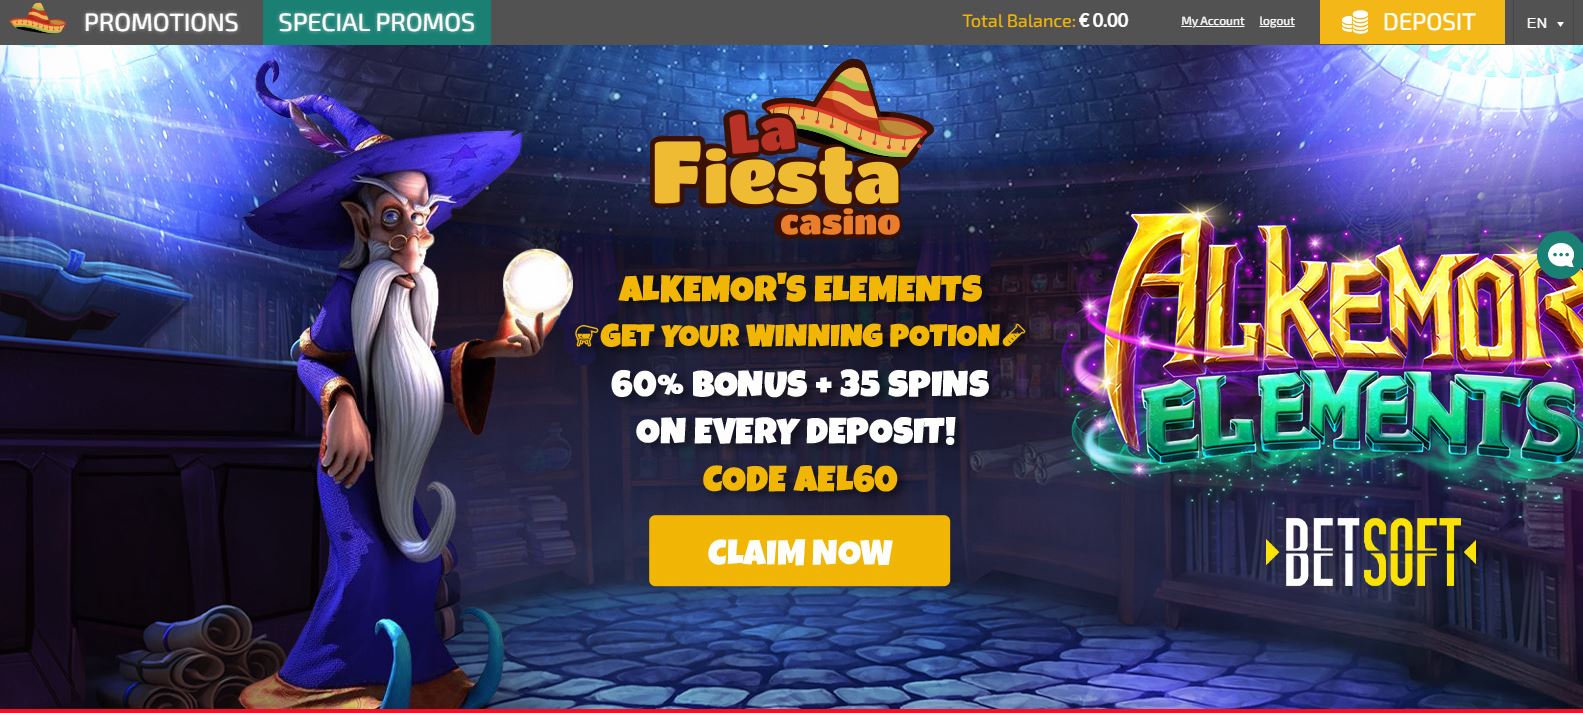 La Fiesta Casino : les bonus et promotions